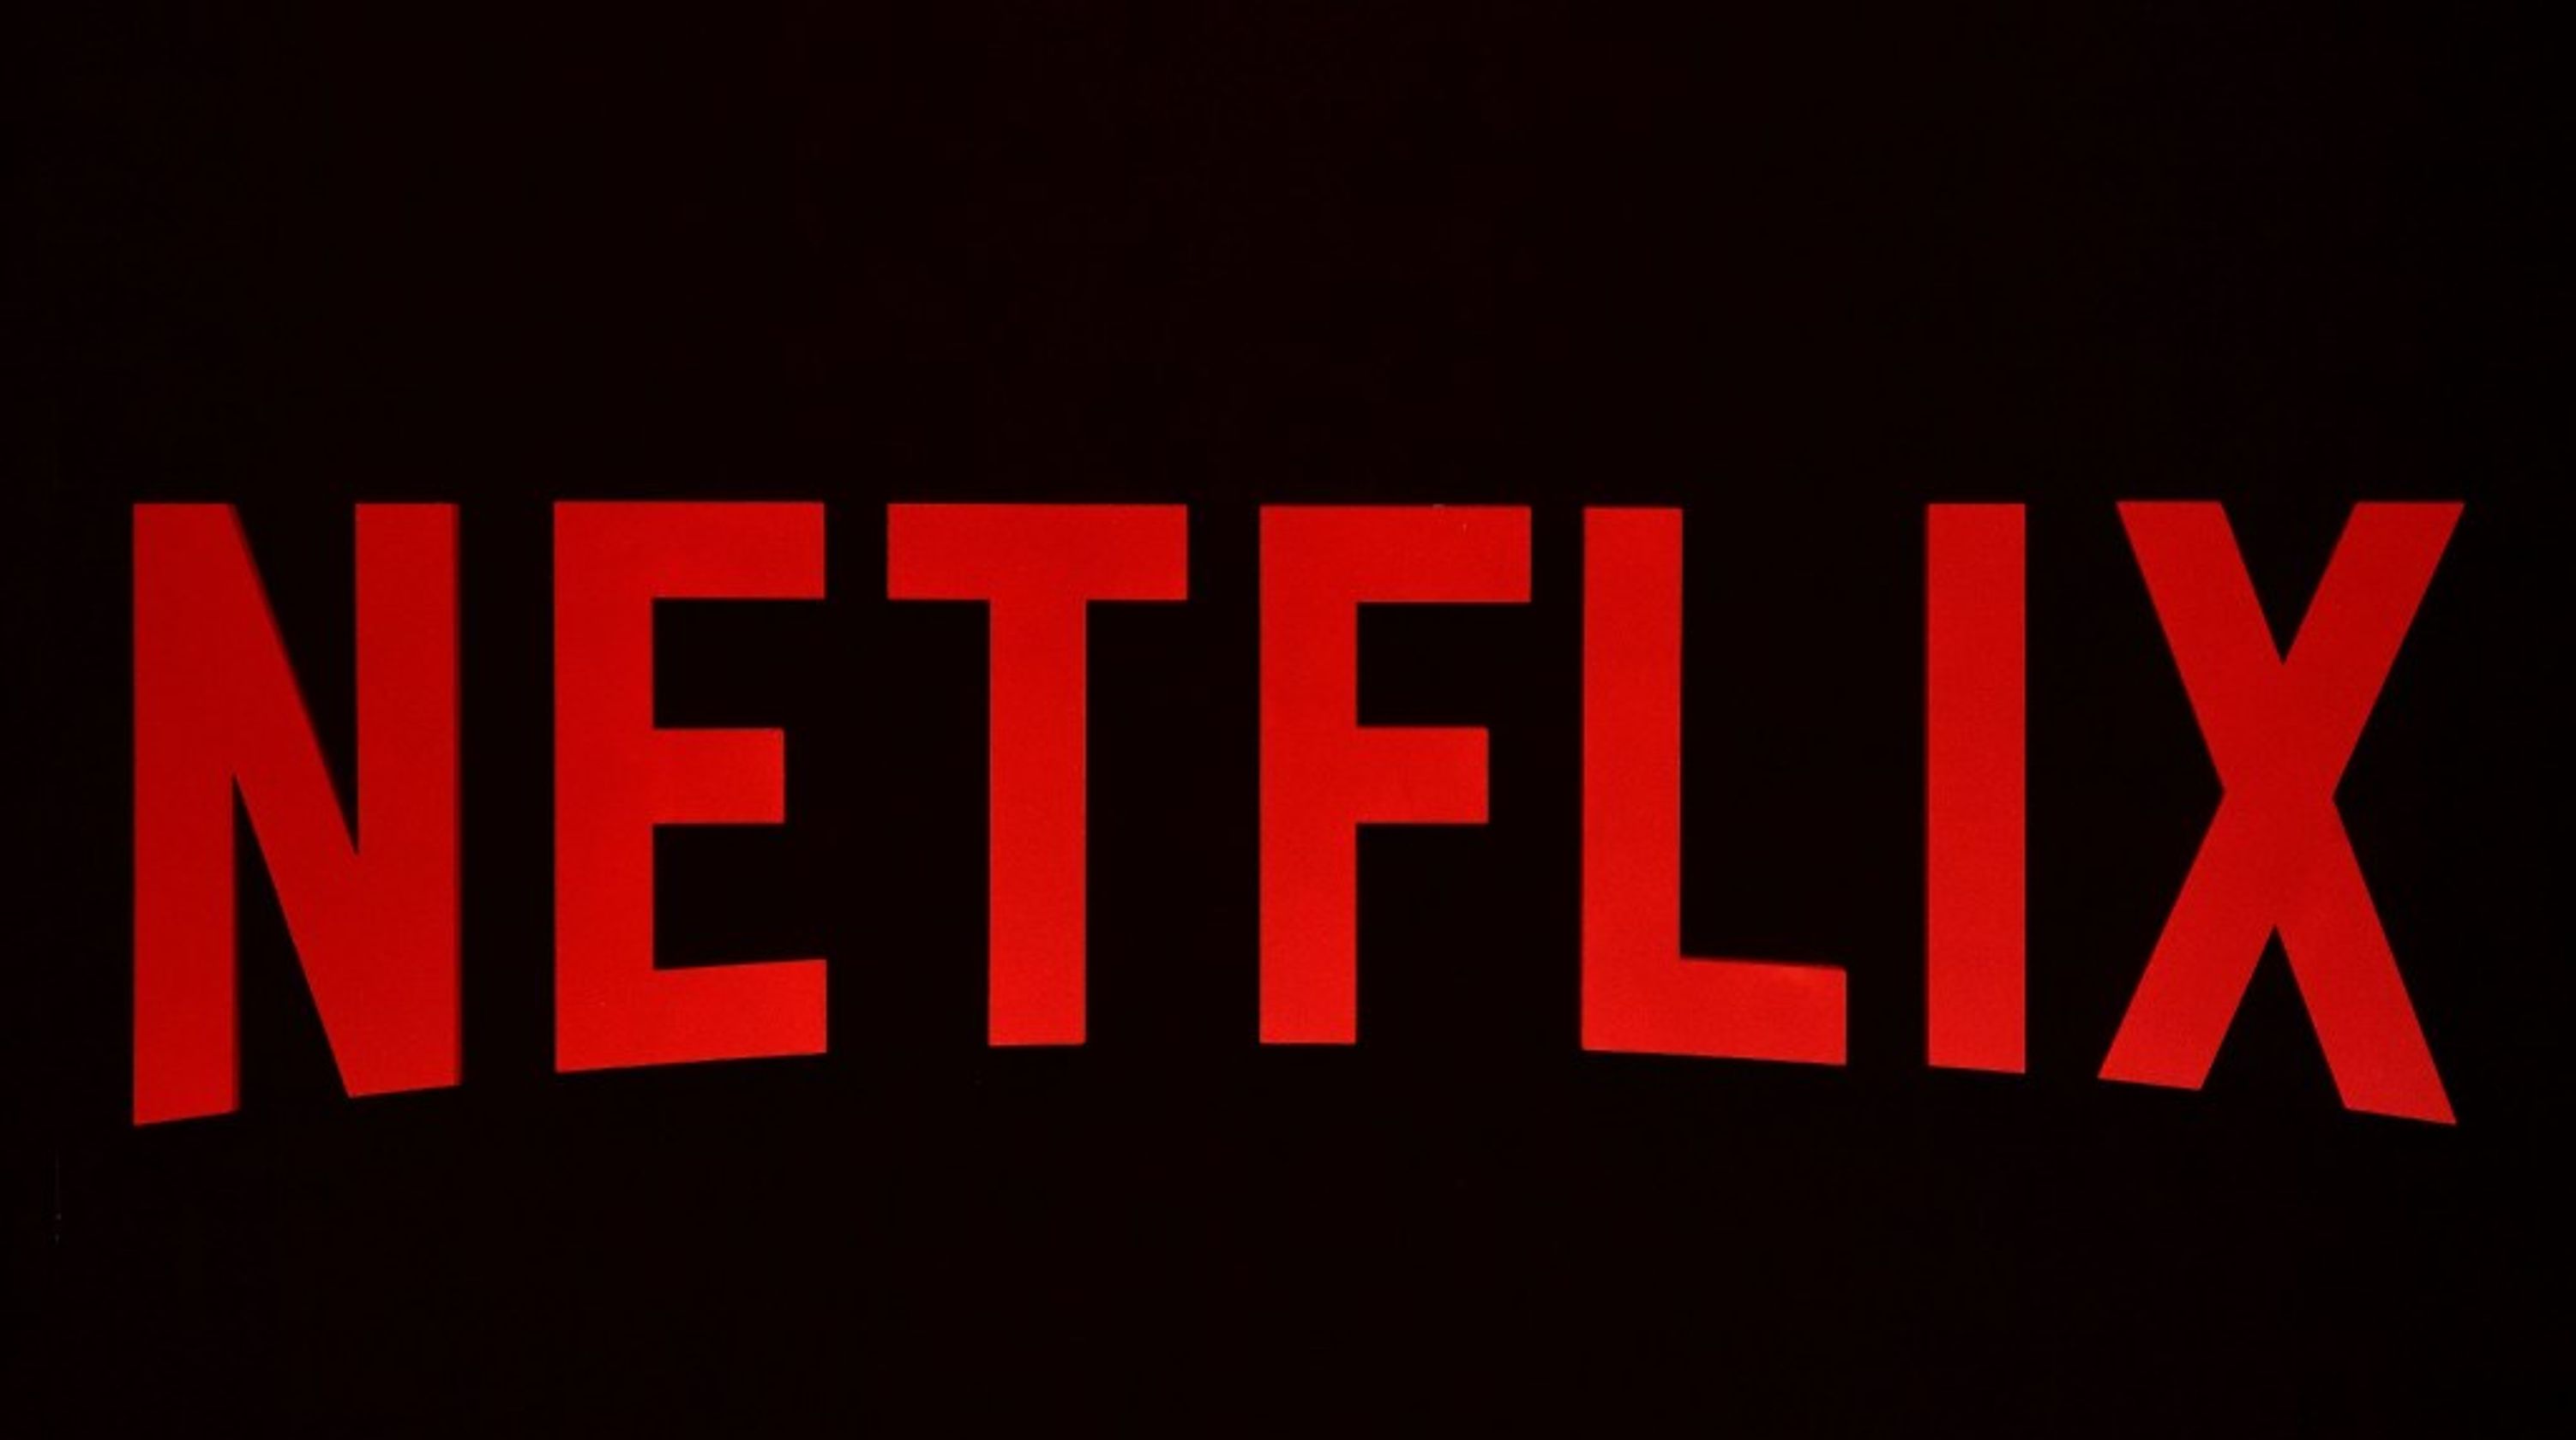 Σε ποιες συσκευές δεν θα παίζει το Netflix μετά την 1η Δεκεμβρίου